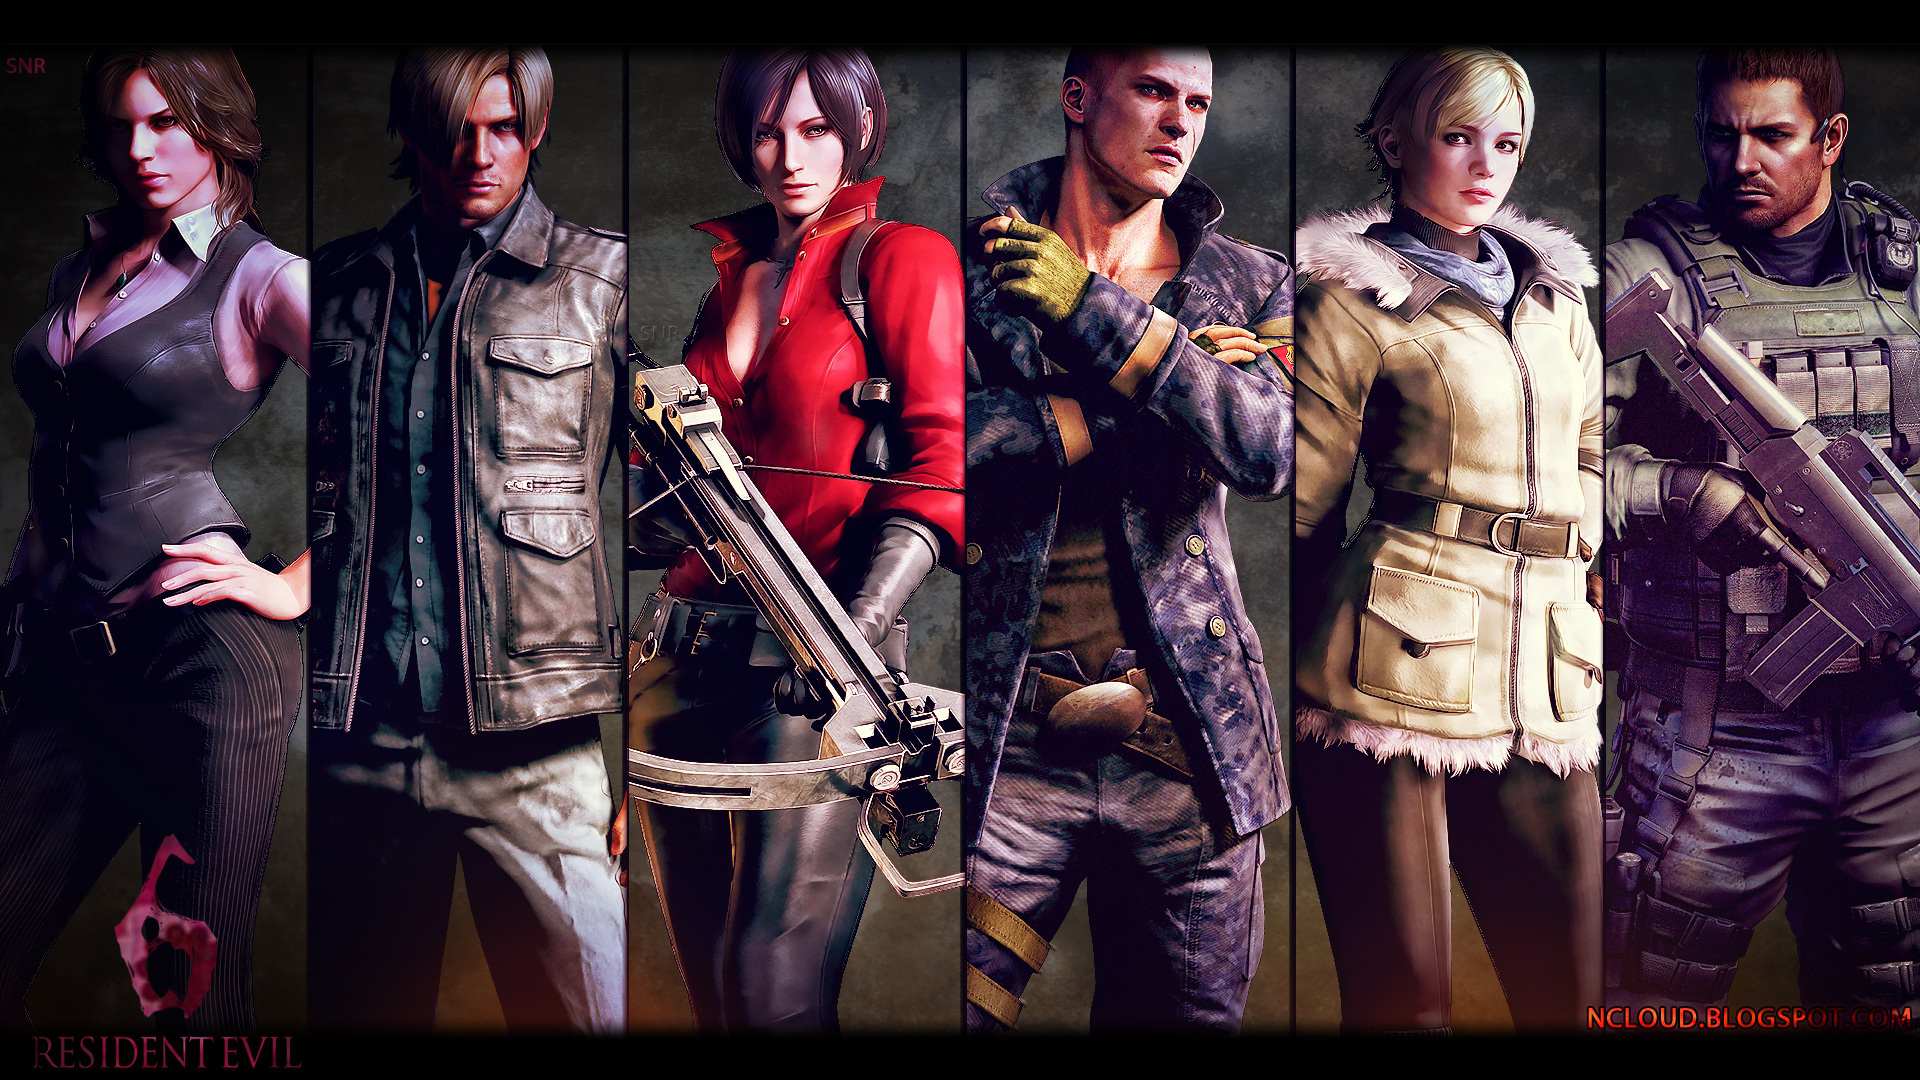 Resident Evil 6 - первый взгляд.